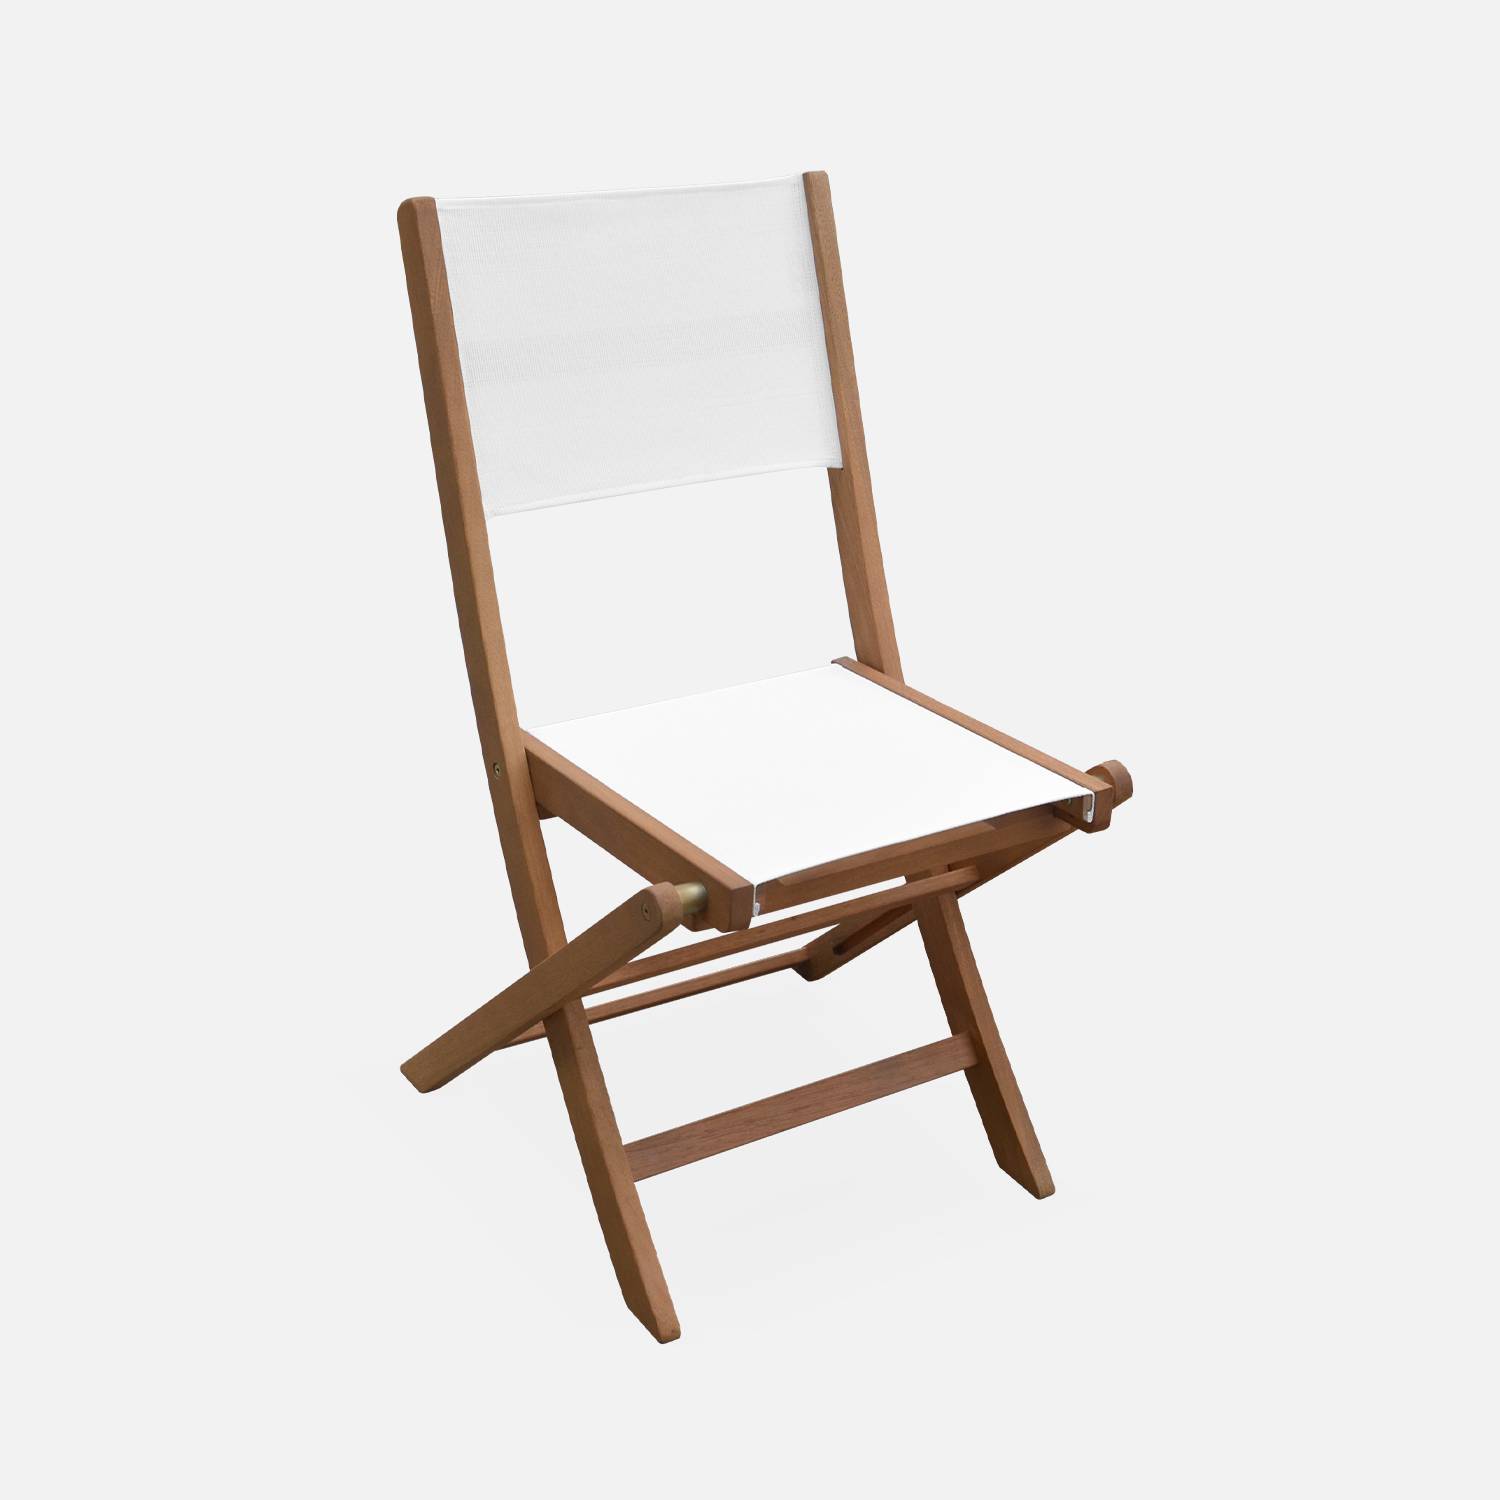 Sedie da giardino, in legno e textilene - modello: Almeria, colore: Bianco - 2 sedie pieghevoli in legno di eucalipto FSC oliato e textilene Photo4